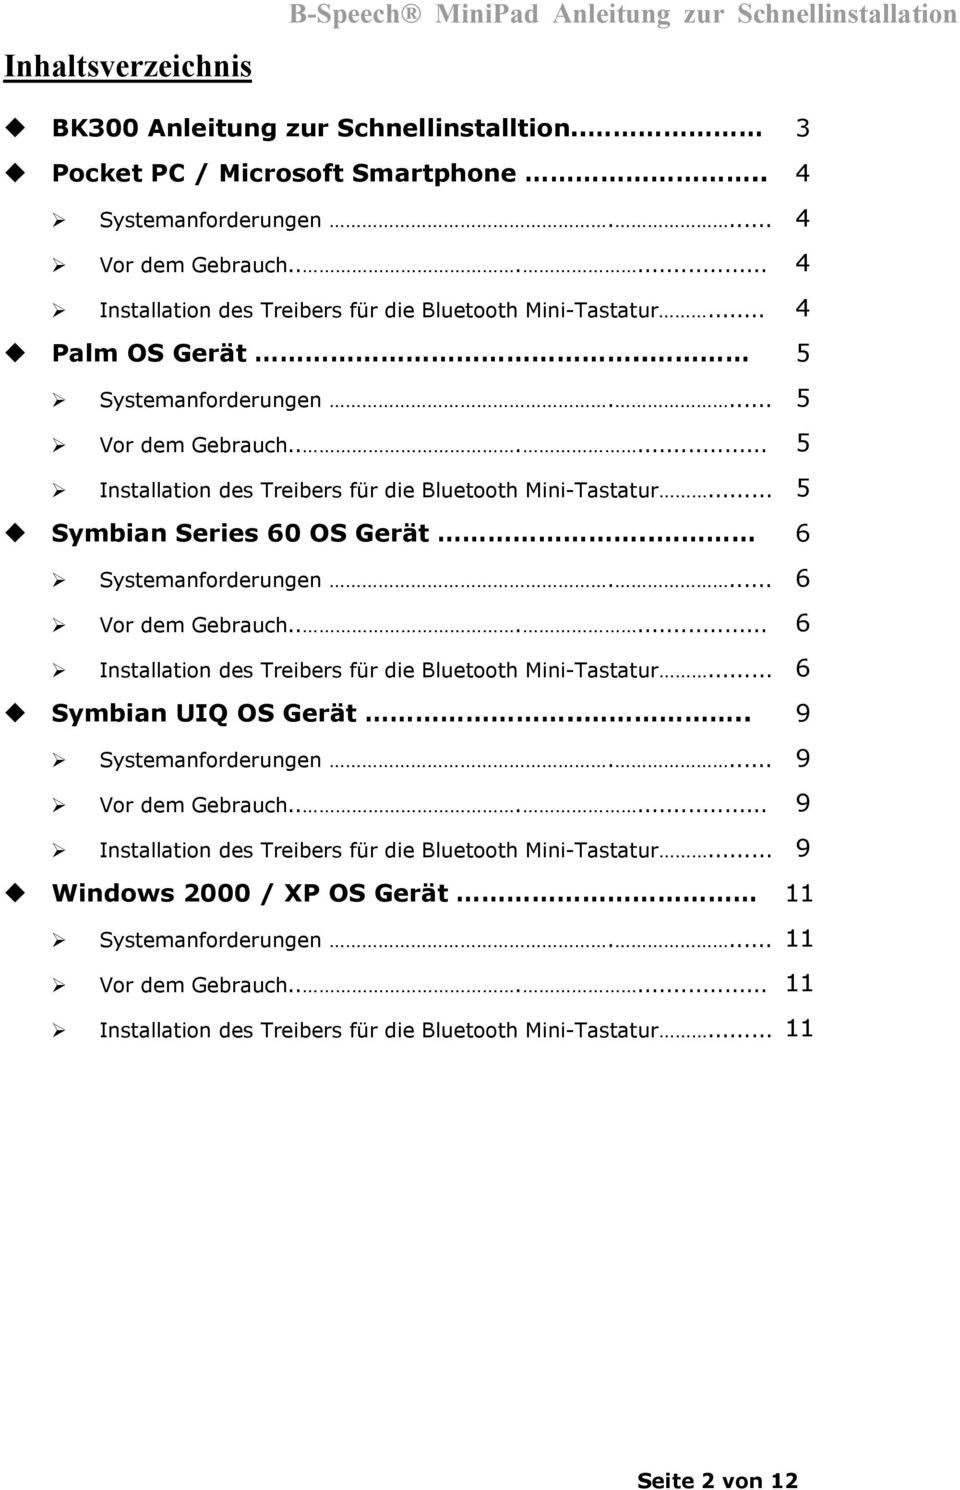 .. 5 Symbian Series 60 OS Gerät.. 6 Systemanforderungen.... 6 Vor dem Gebrauch...... 6 Installation des Treibers für die Bluetooth Mini-Tastatur... 6 Symbian UIQ OS Gerät.... 9 Systemanforderungen.